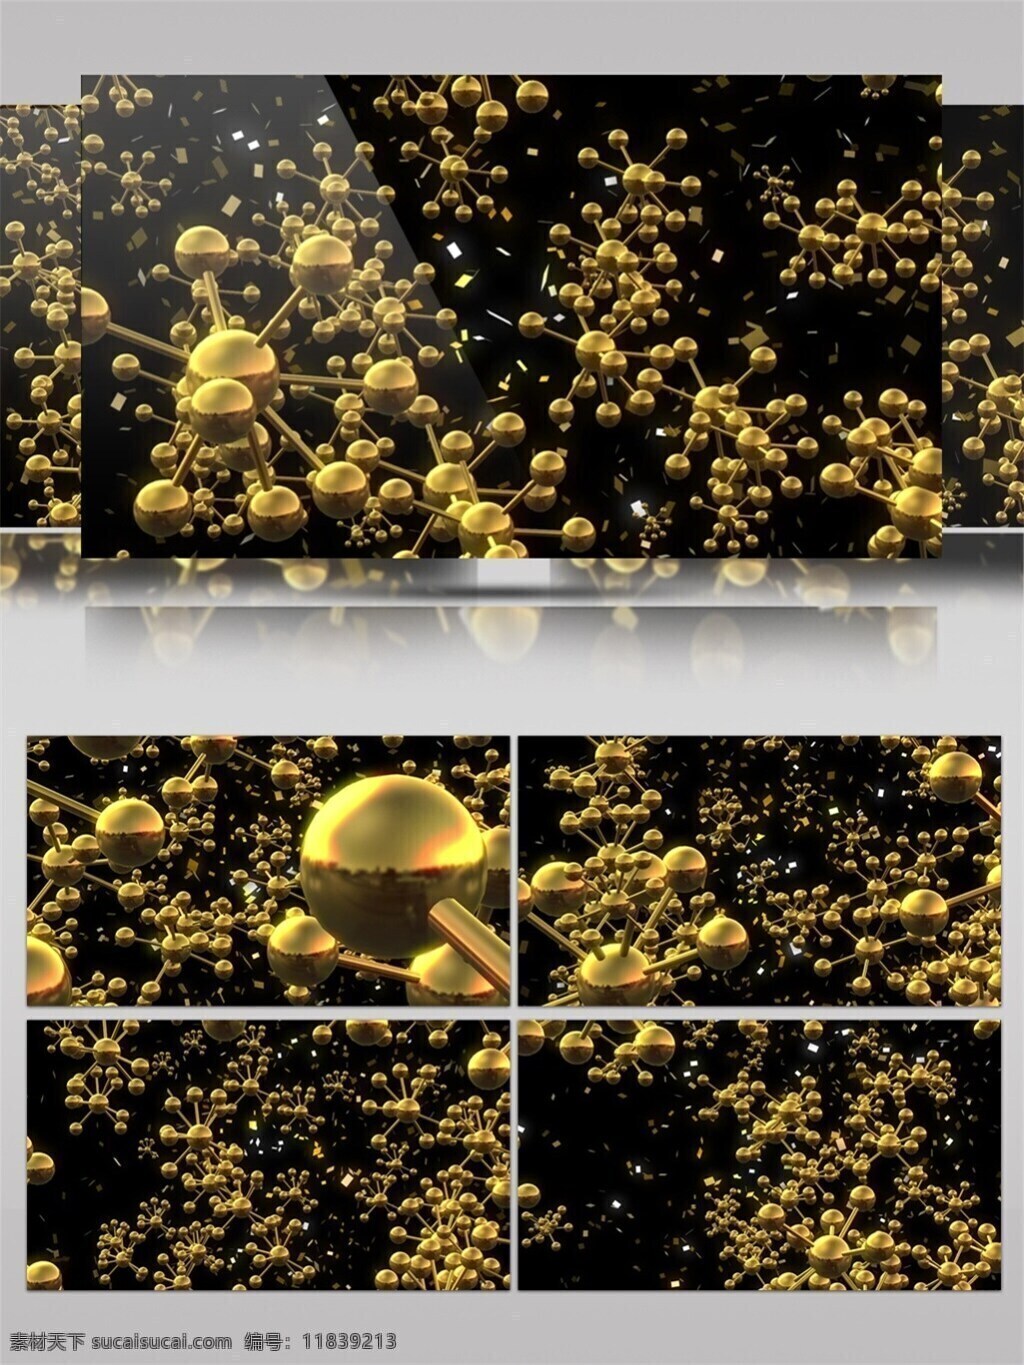 梦幻 金球 动态 视频 3d视频素材 led 闪烁 灯光 富贵金色 华丽球 金色小球